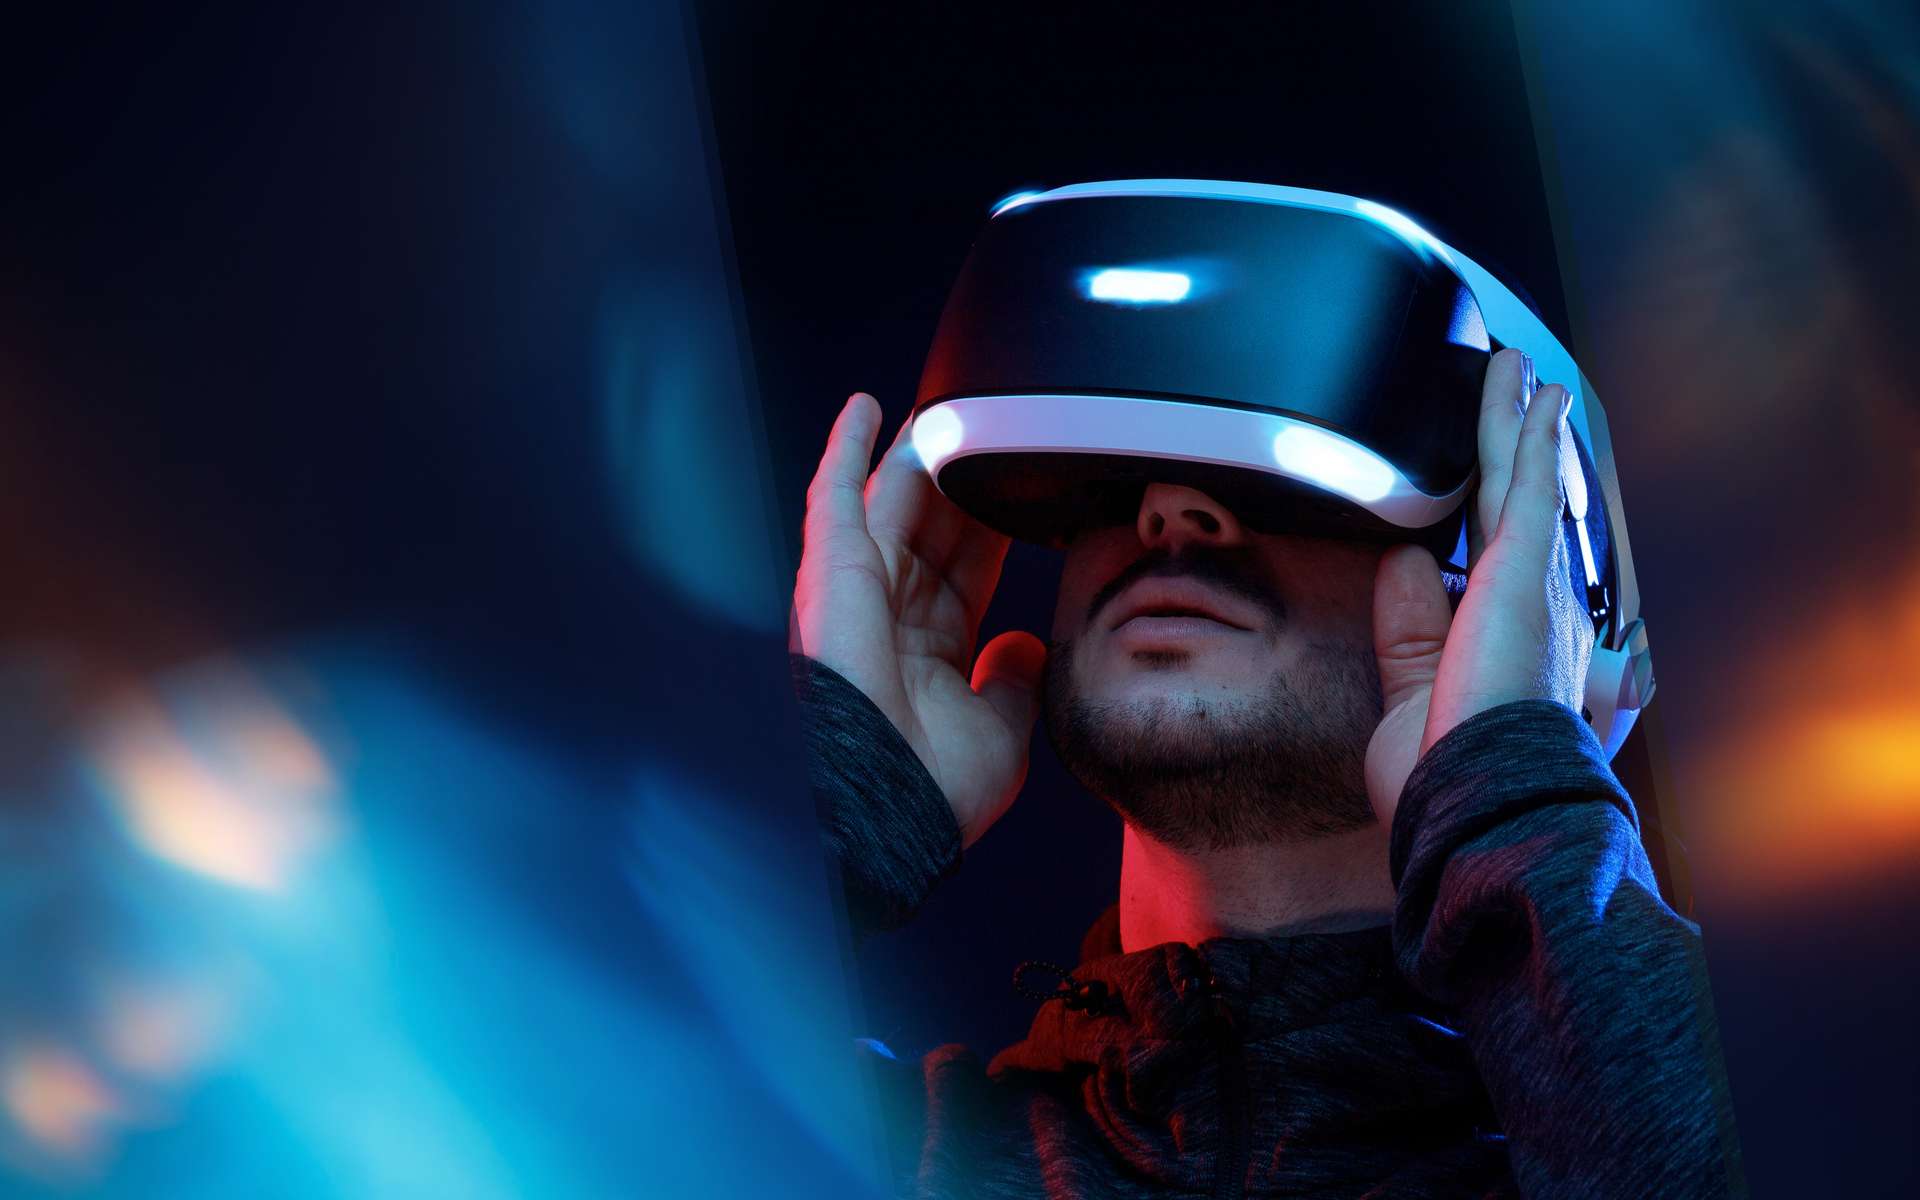 Réalité virtuelle: focus sur une révolution en cours